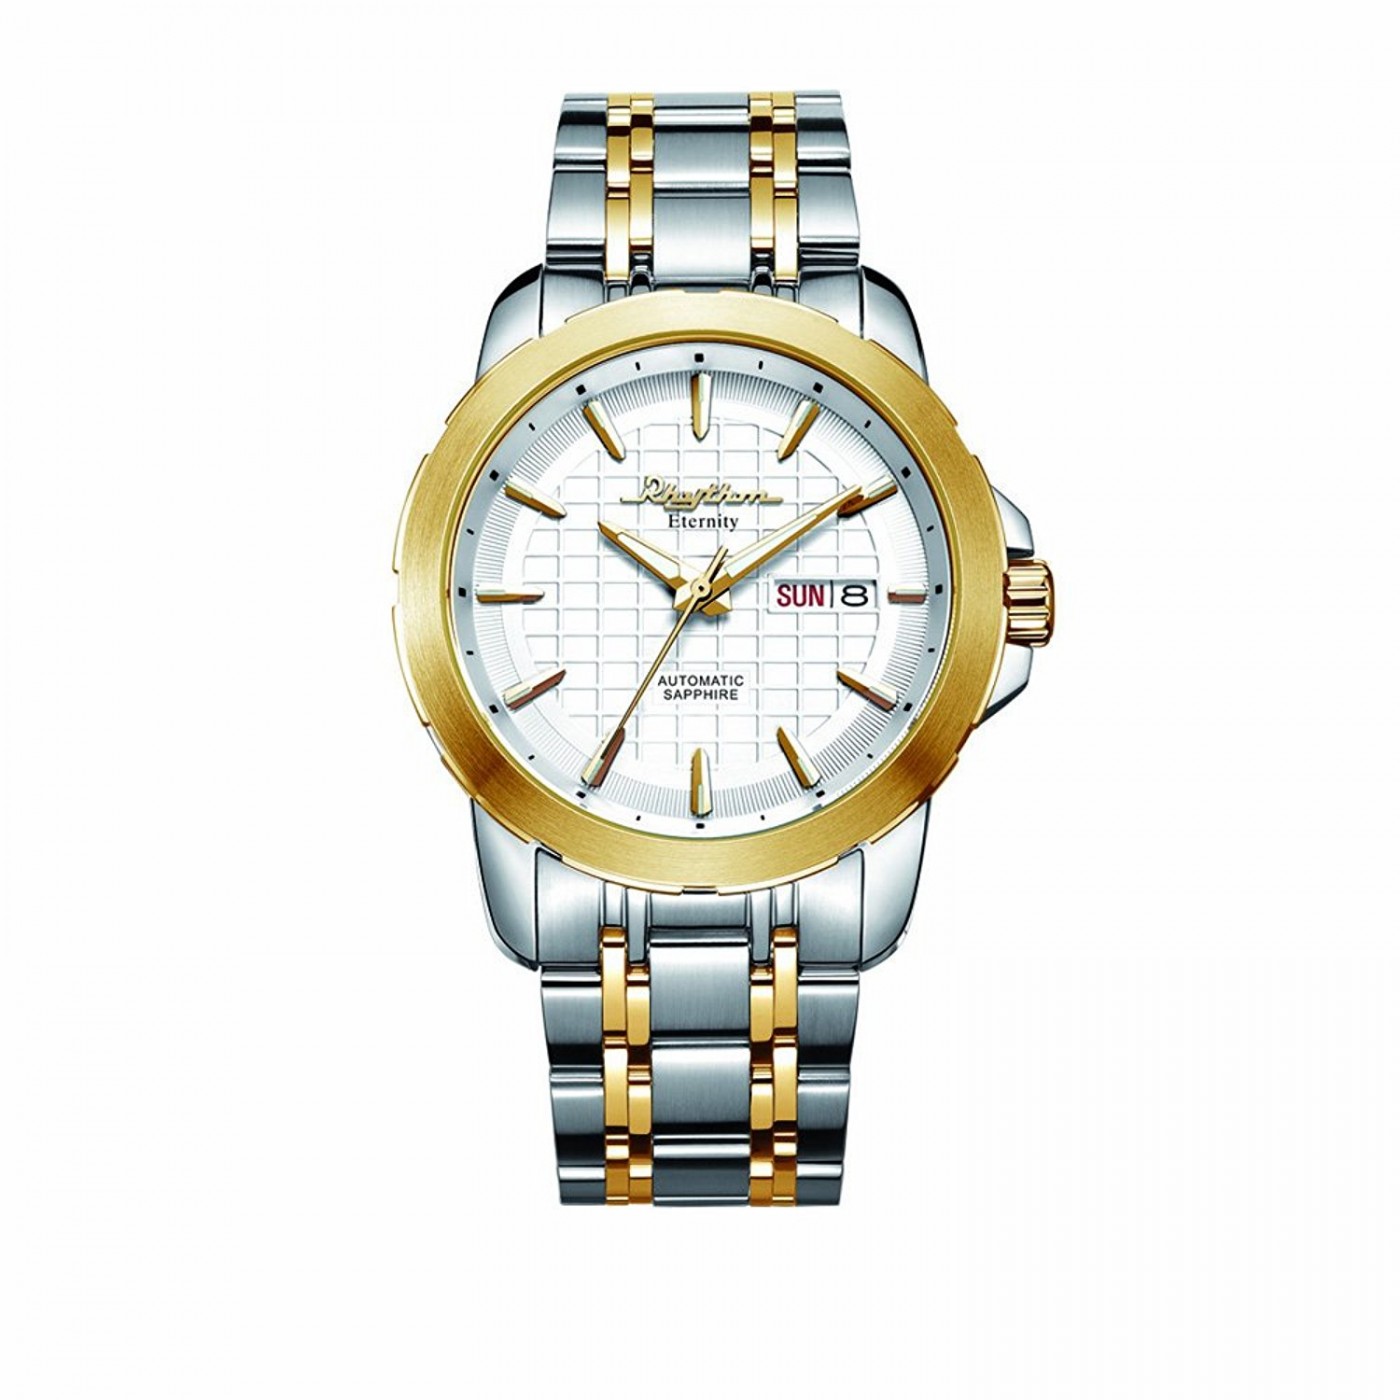 Hublot unveils new full sapphire watch | Wallpaper